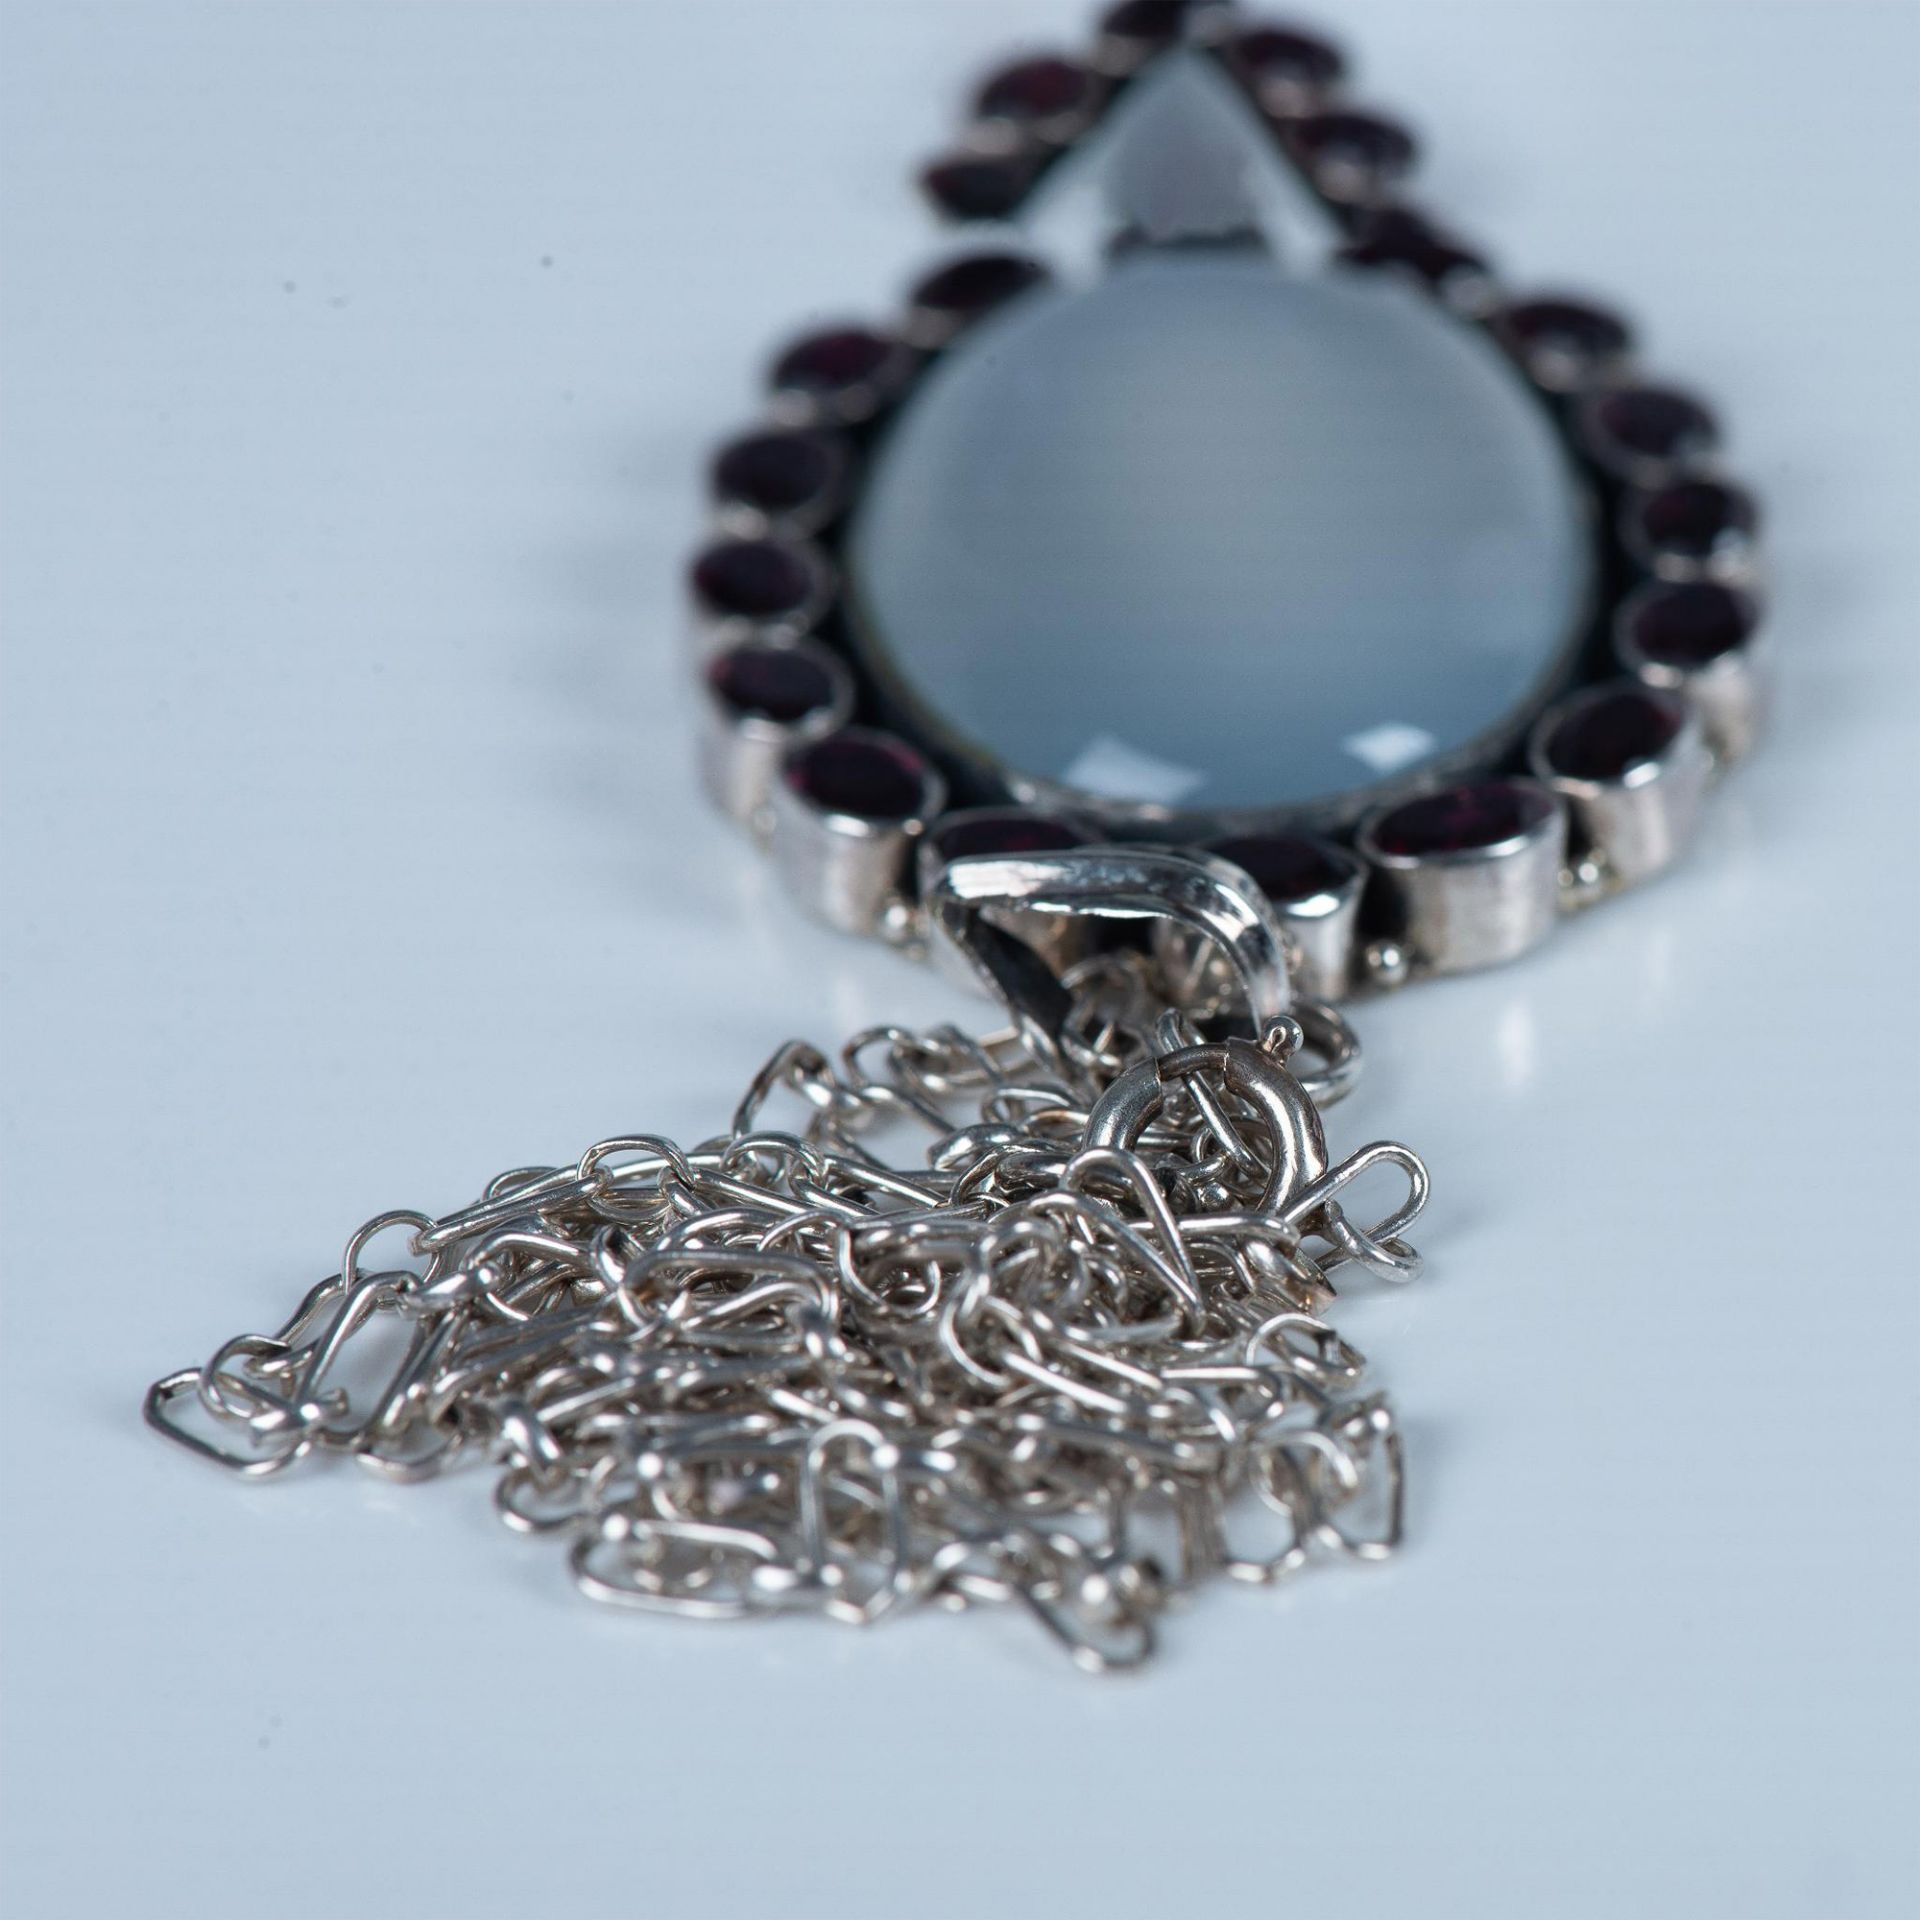 Vintage Sterling Silver, Moonstone & Garnet Pendant Necklace - Image 7 of 7